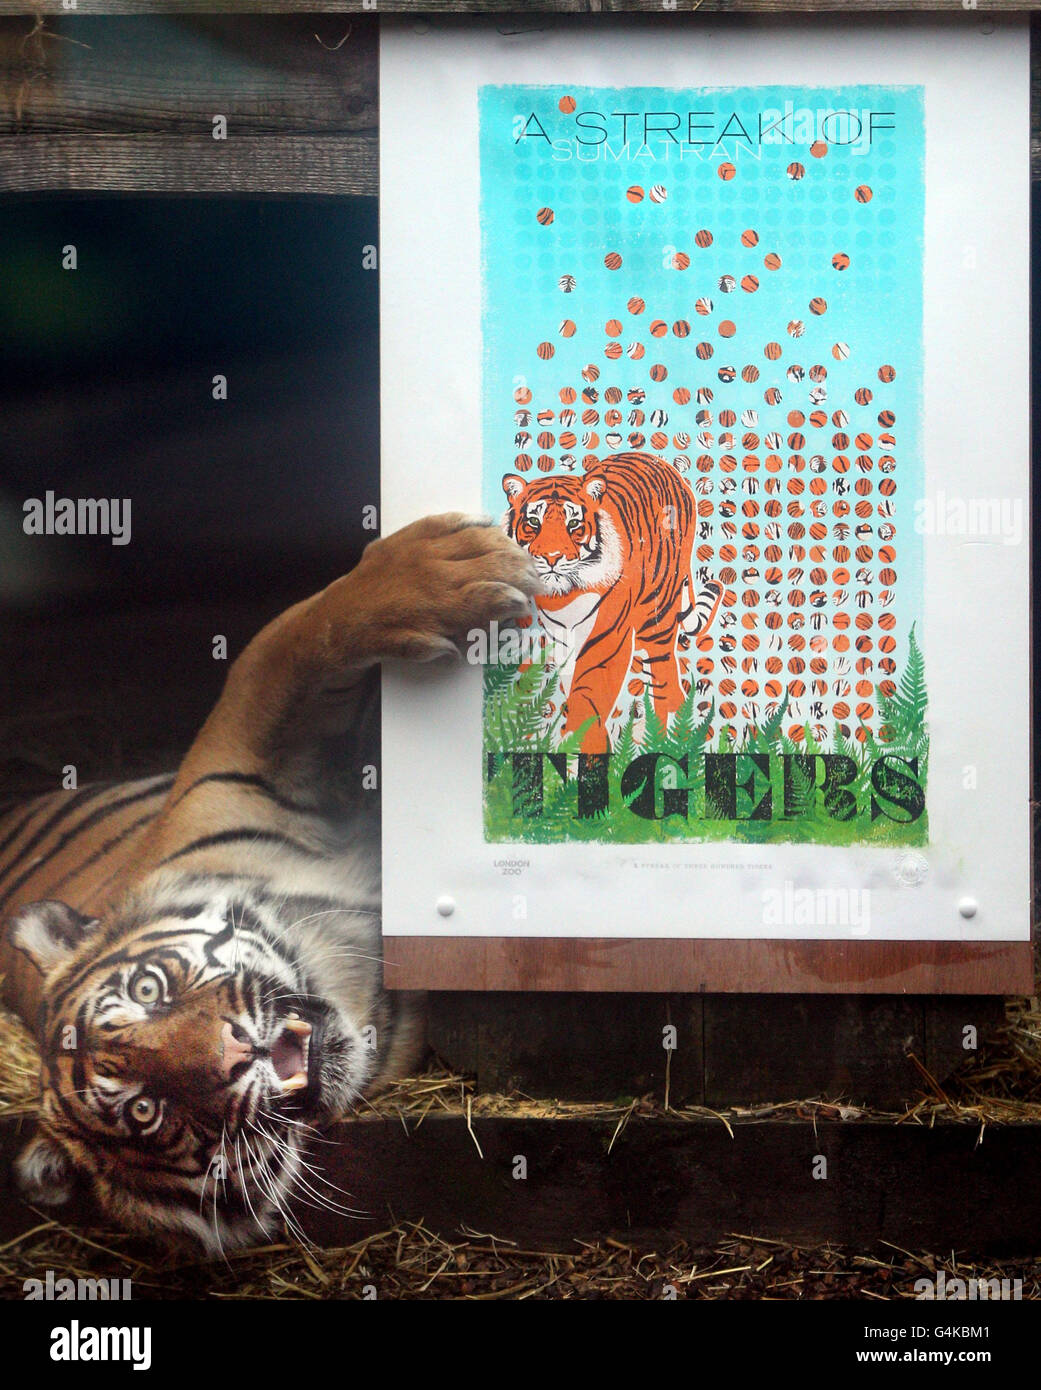 Campagne SOS Tigre du Zoo de Londres Banque D'Images